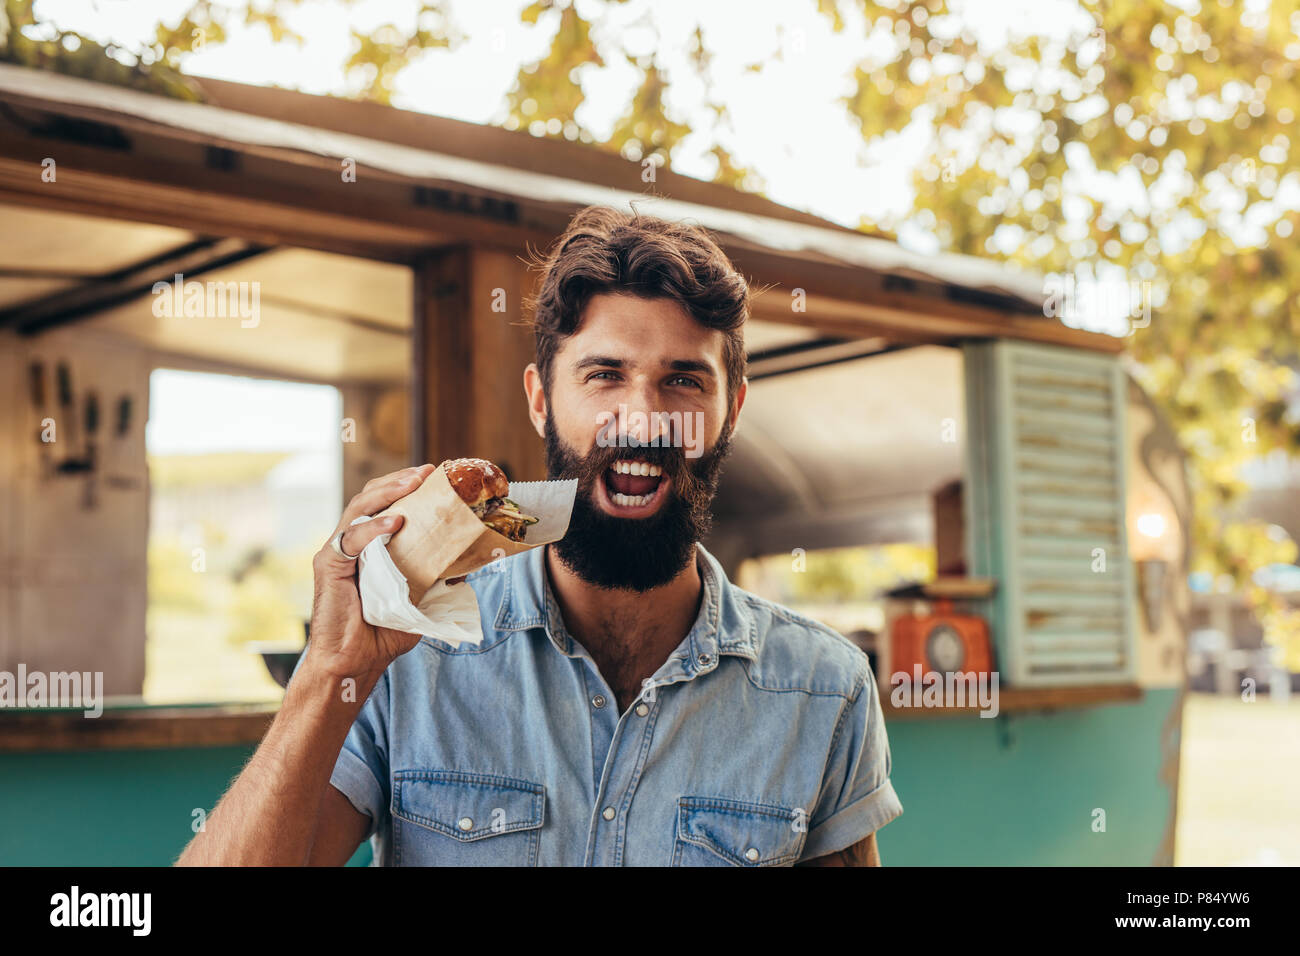 Ragazzo con la barba di mangiare un hamburger. L'uomo avente un acquolina in bocca burger all'esterno. Foto Stock